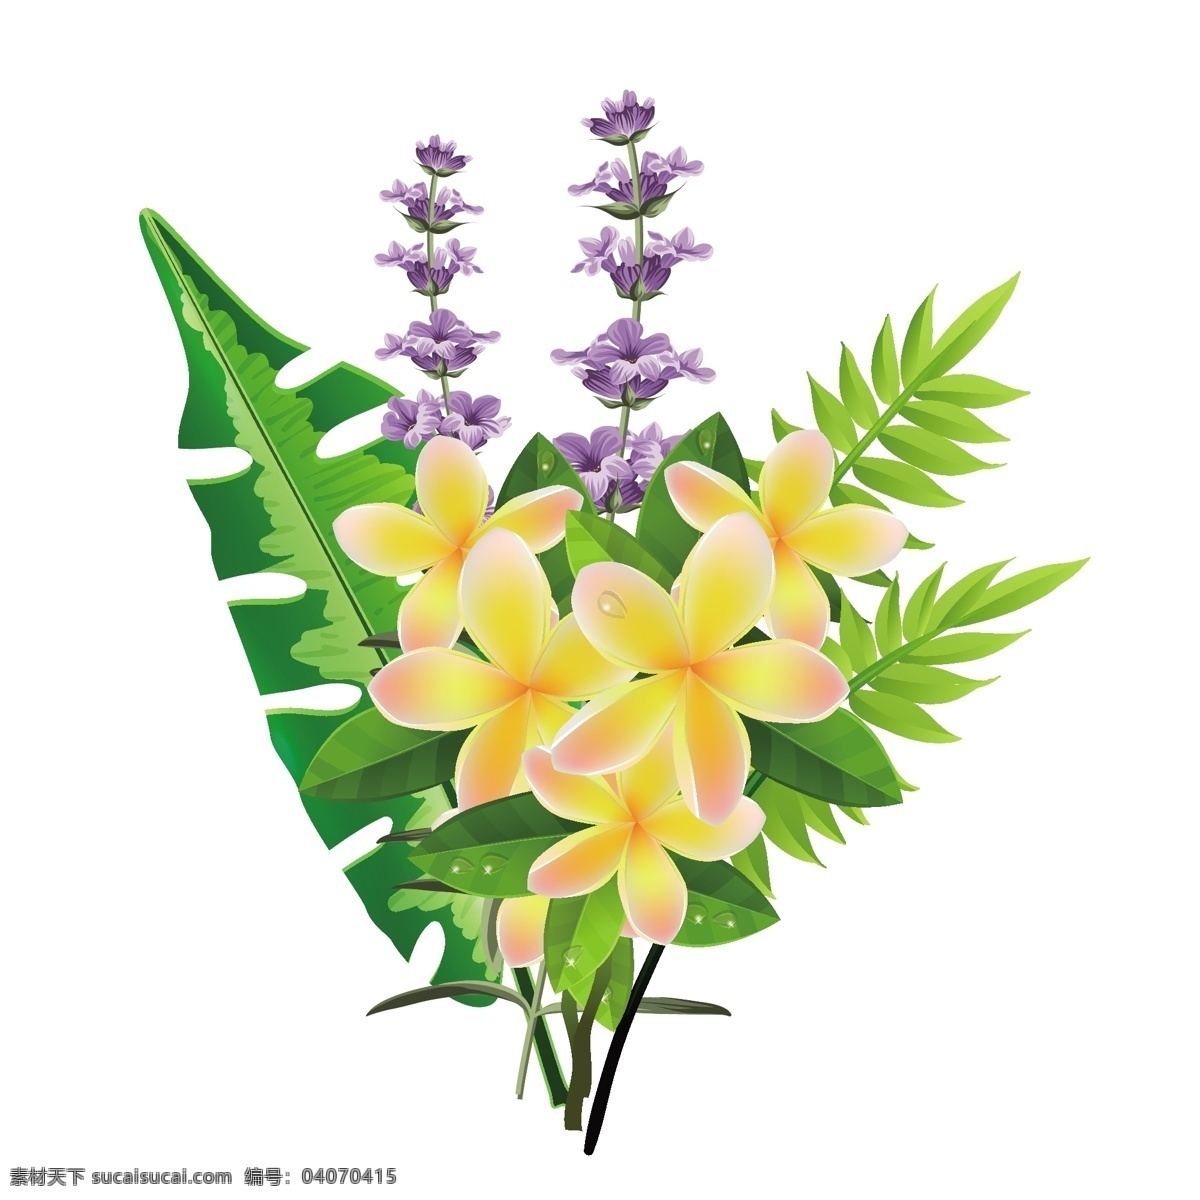 矢量 手绘 鲜花 植物 元素 花束 黄色的花 紫色的花 元素设计 设计元素 矢量元素 手绘元素 设计素材 矢量植物 手绘植物 叶子 绿叶 花